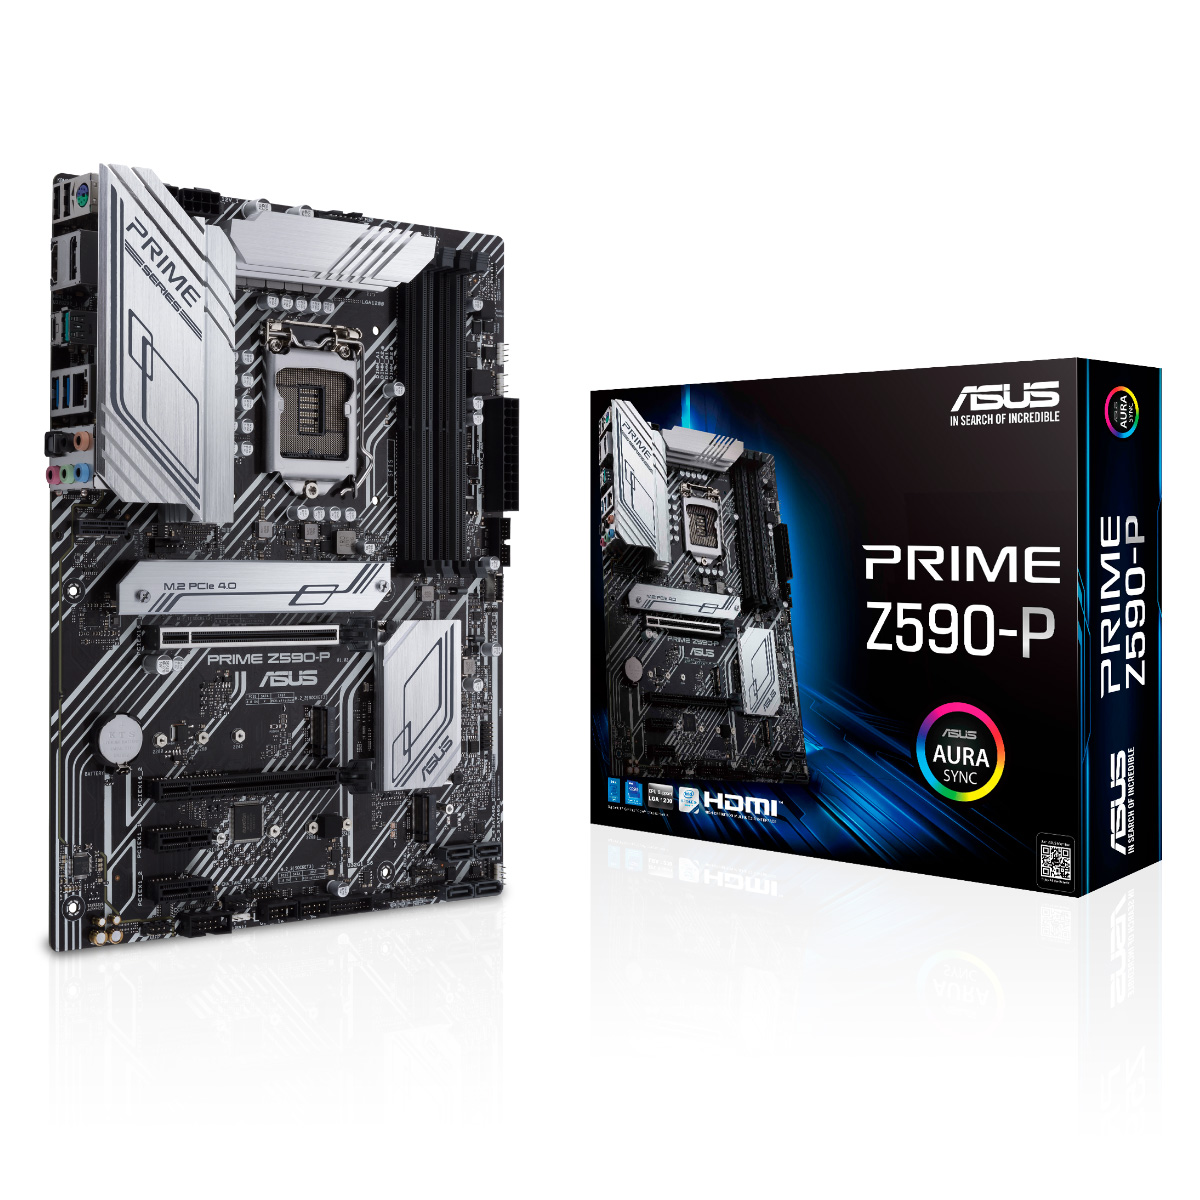 Asus Prime Z590-P (LGA 1200 - DDR4 5133 O.C) - Chipset Intel Z590 - USB 3.2 - Slot M.2 - ATX